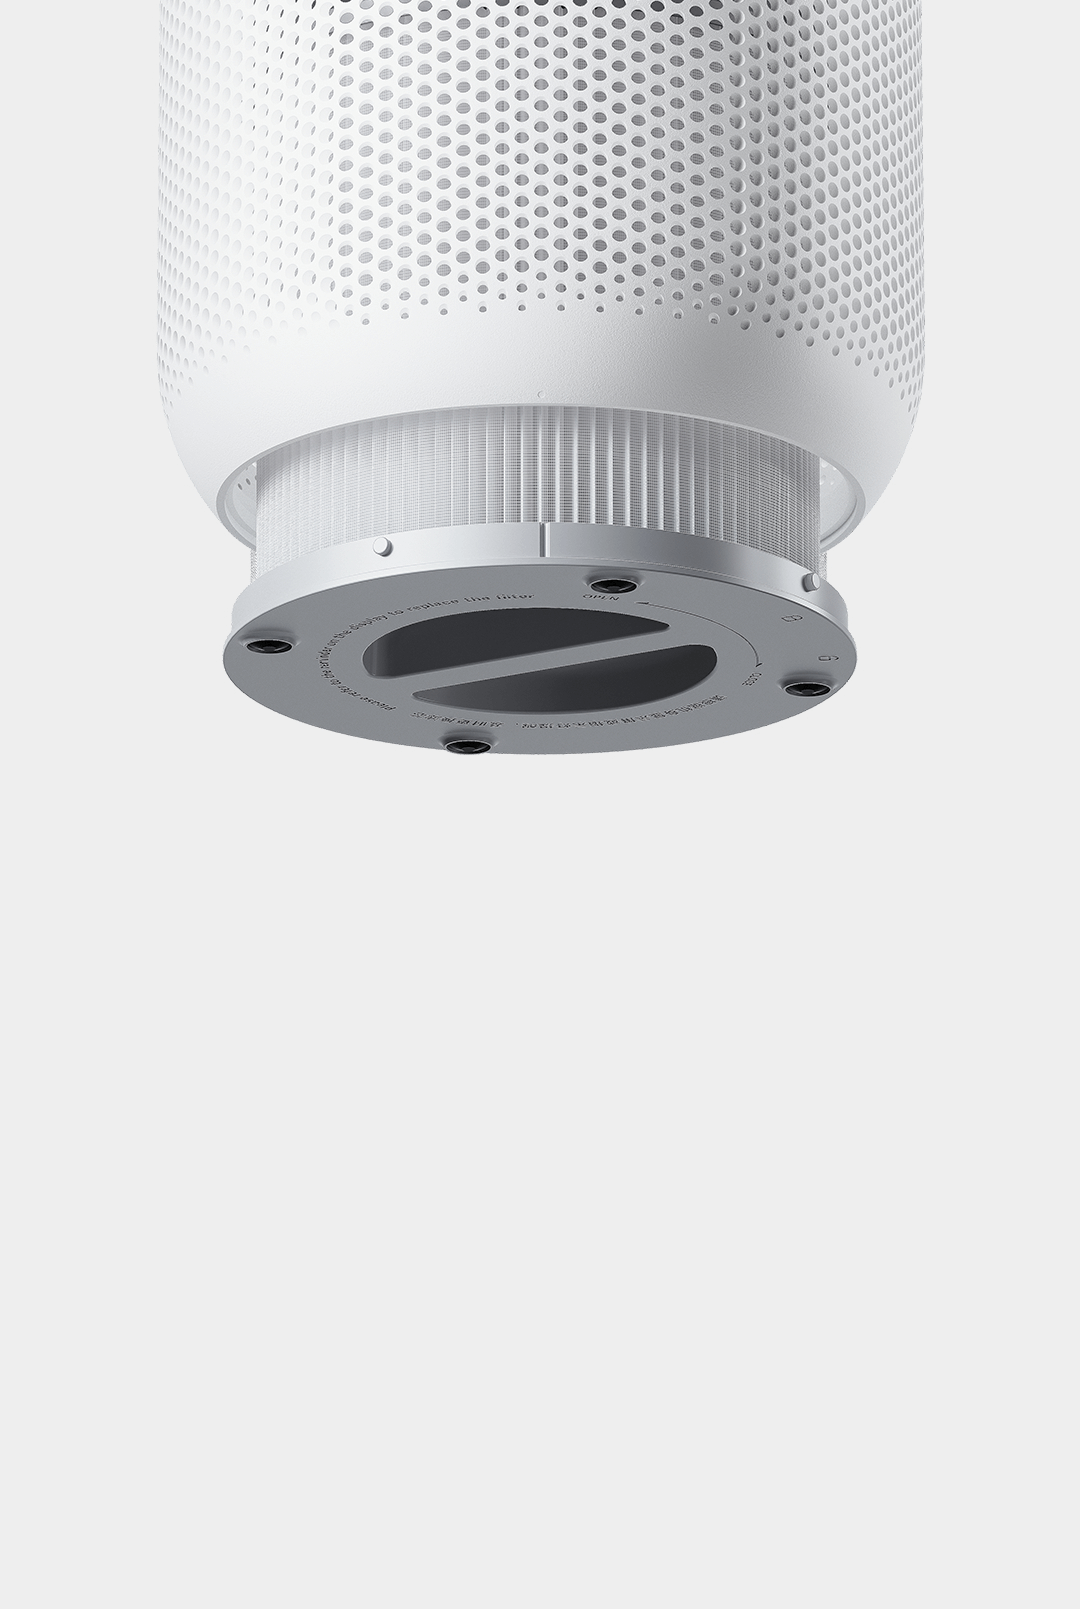 Xiaomi Smart Air Purifier 4 Compact Filter 